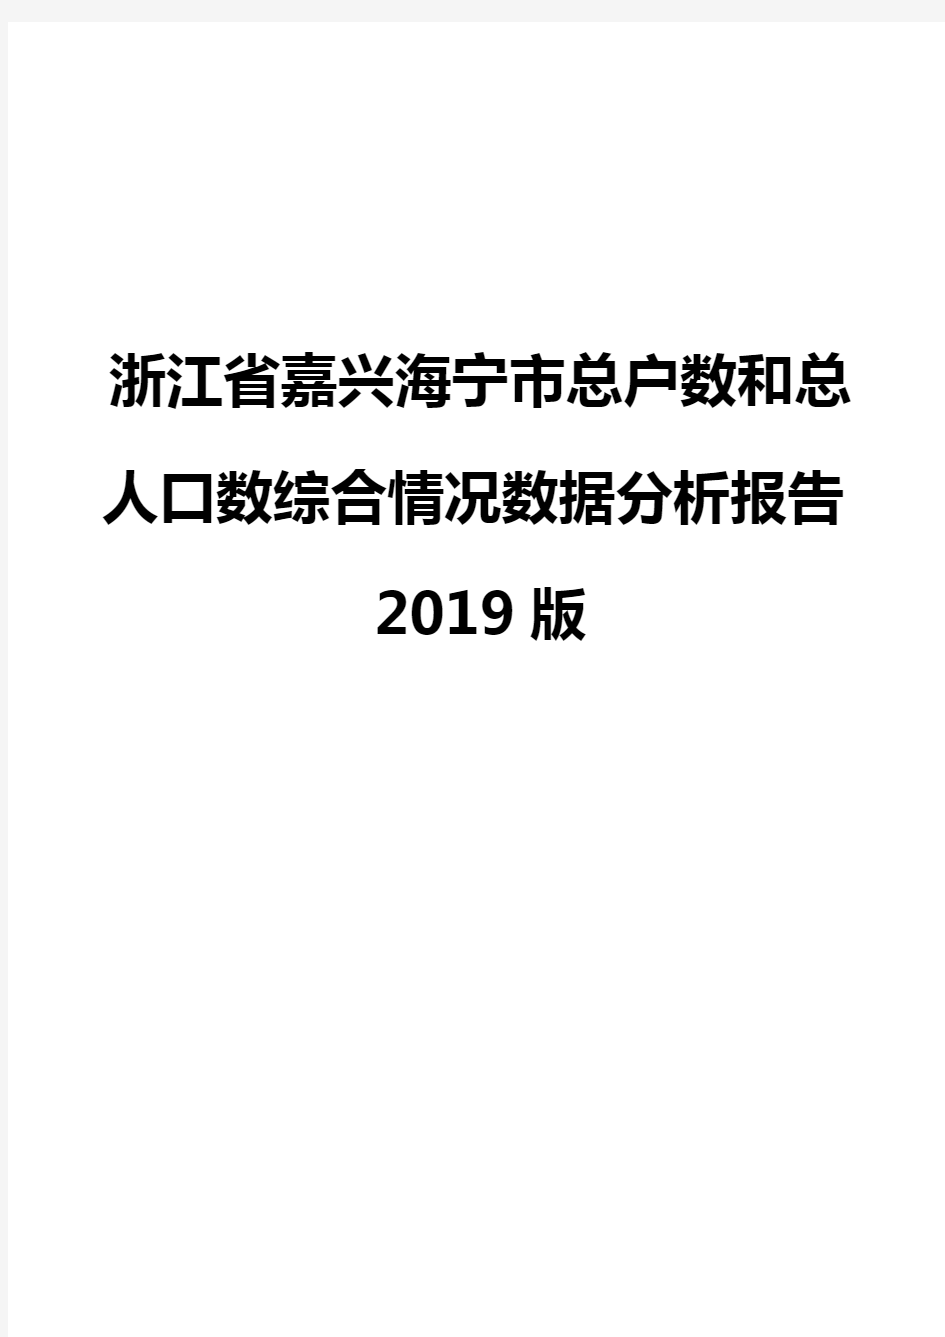 浙江省嘉兴海宁市总户数和总人口数综合情况数据分析报告2019版